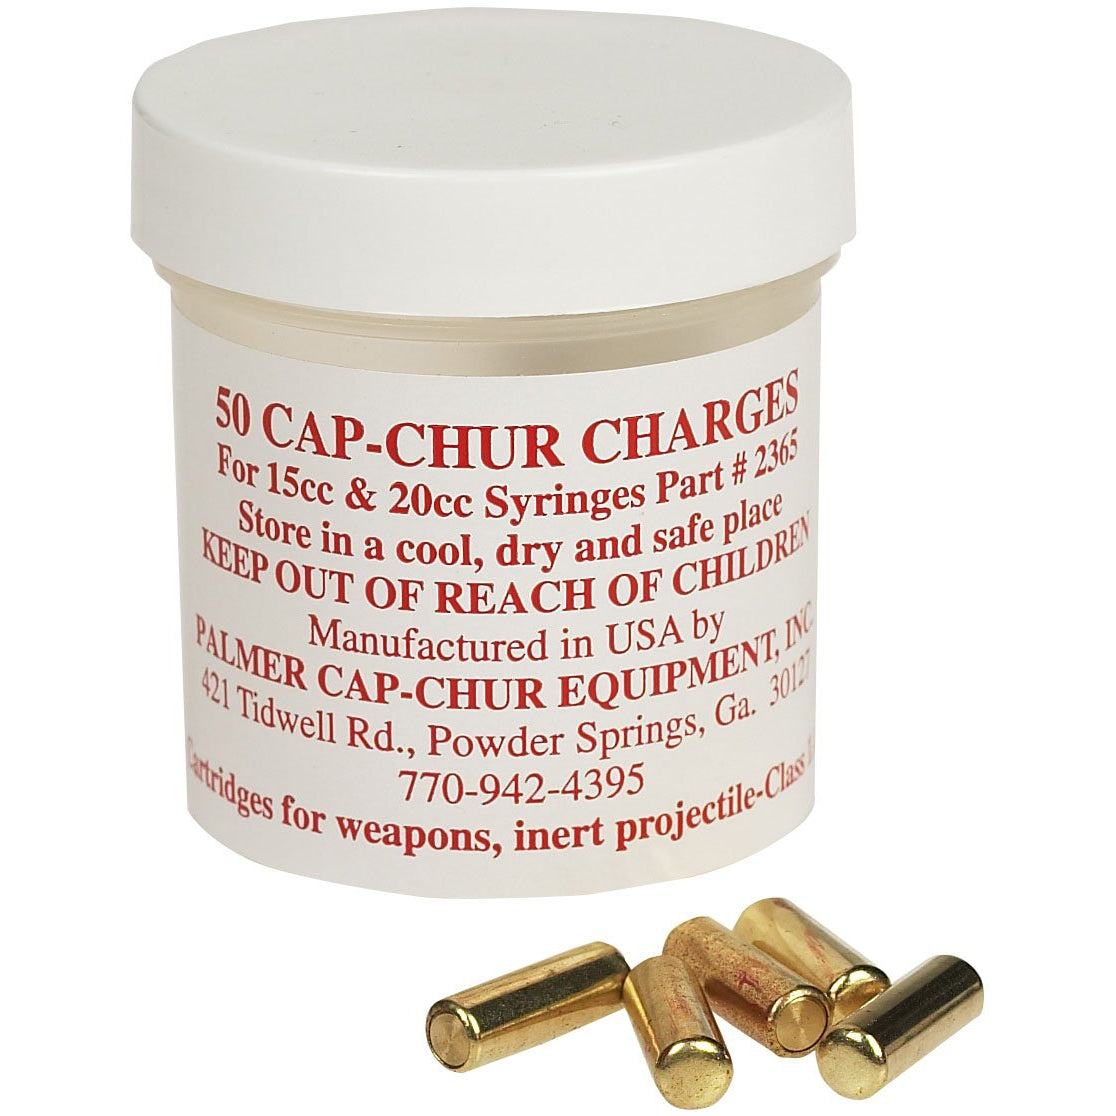 Cap-Chur Charges For 15 through 20 cc Syringes Part# 2365